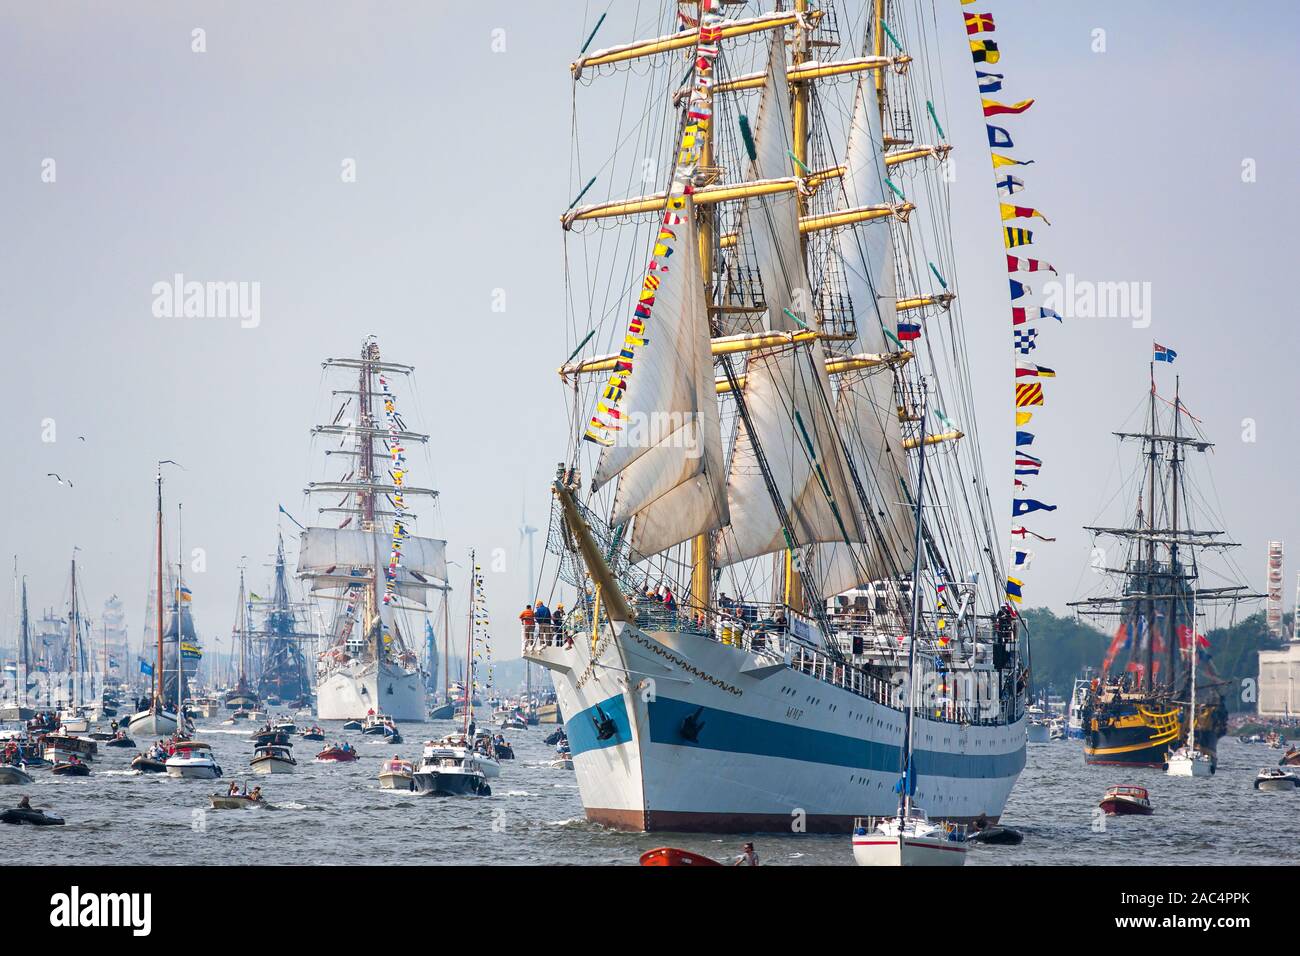 Il russo STS Mir, Мир, che significa Pace, nave alta tre alberi dalla Russia che naviga verso Amsterdam durante l'evento di Amsterdam Sail 2015 Tall Ships. Foto Stock